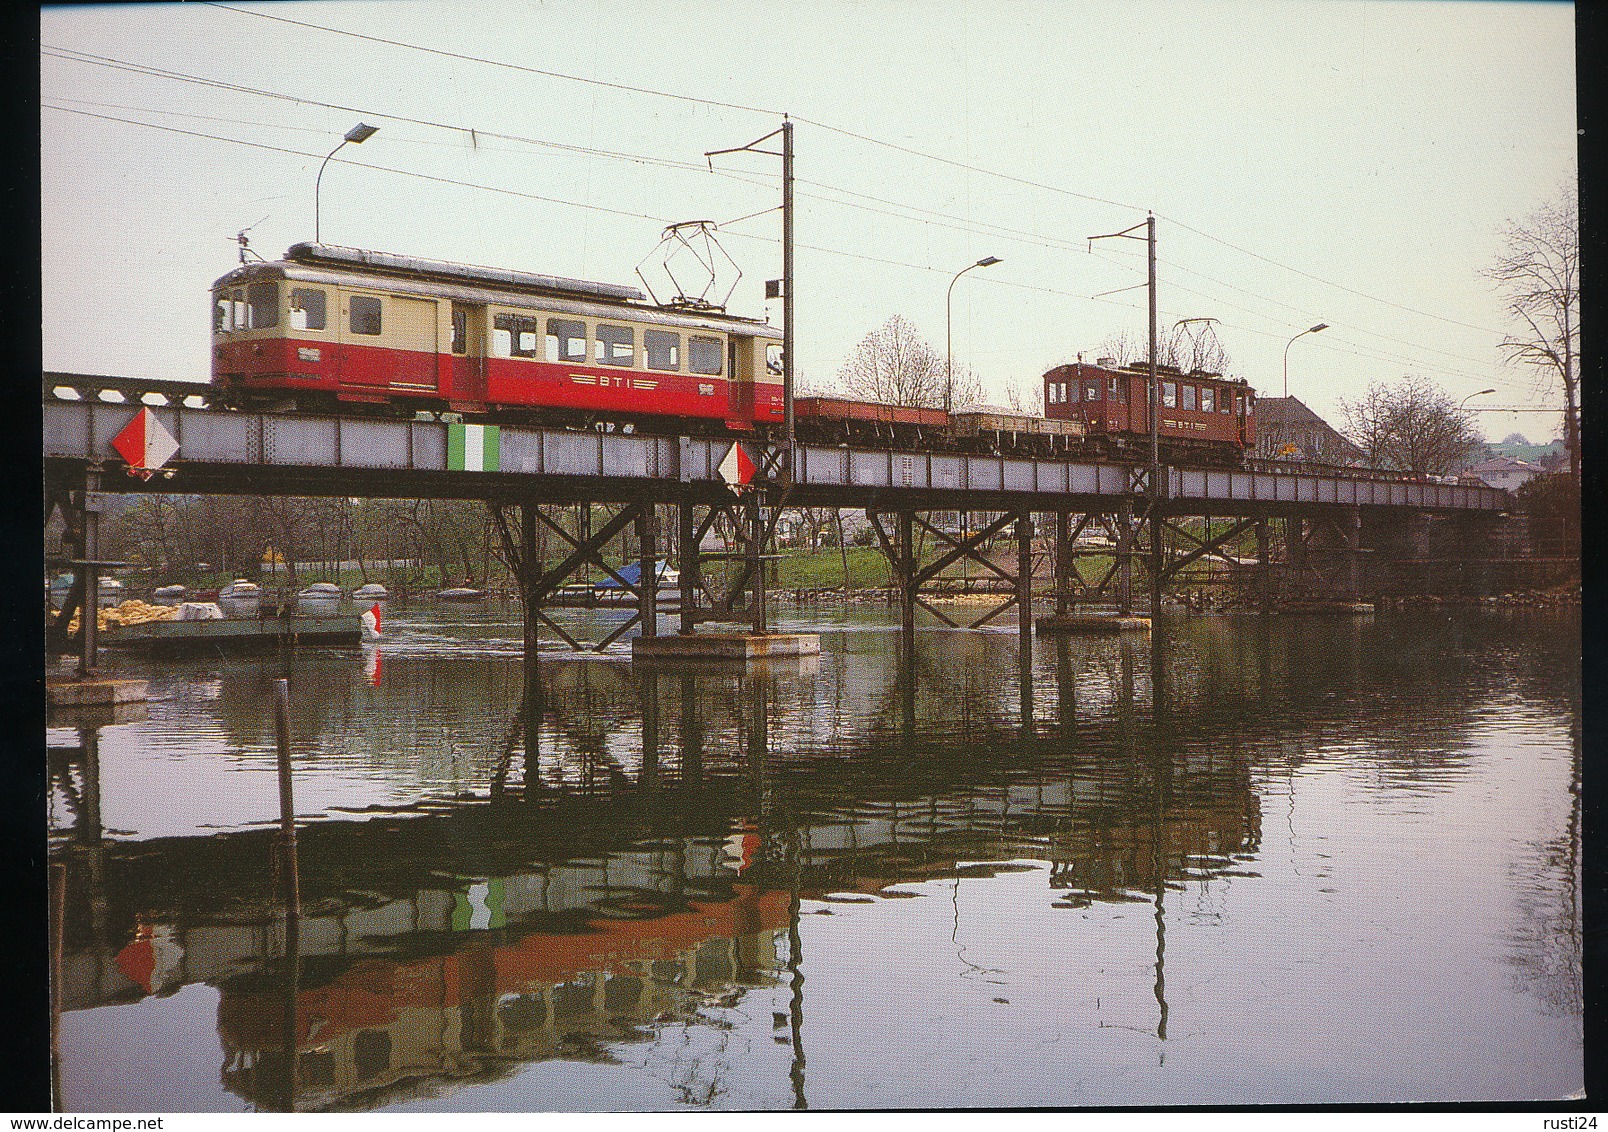 75 Jahre Biel - Tauffelen - Ins - Bahn BT1  1916 - 1991 -- - Trains